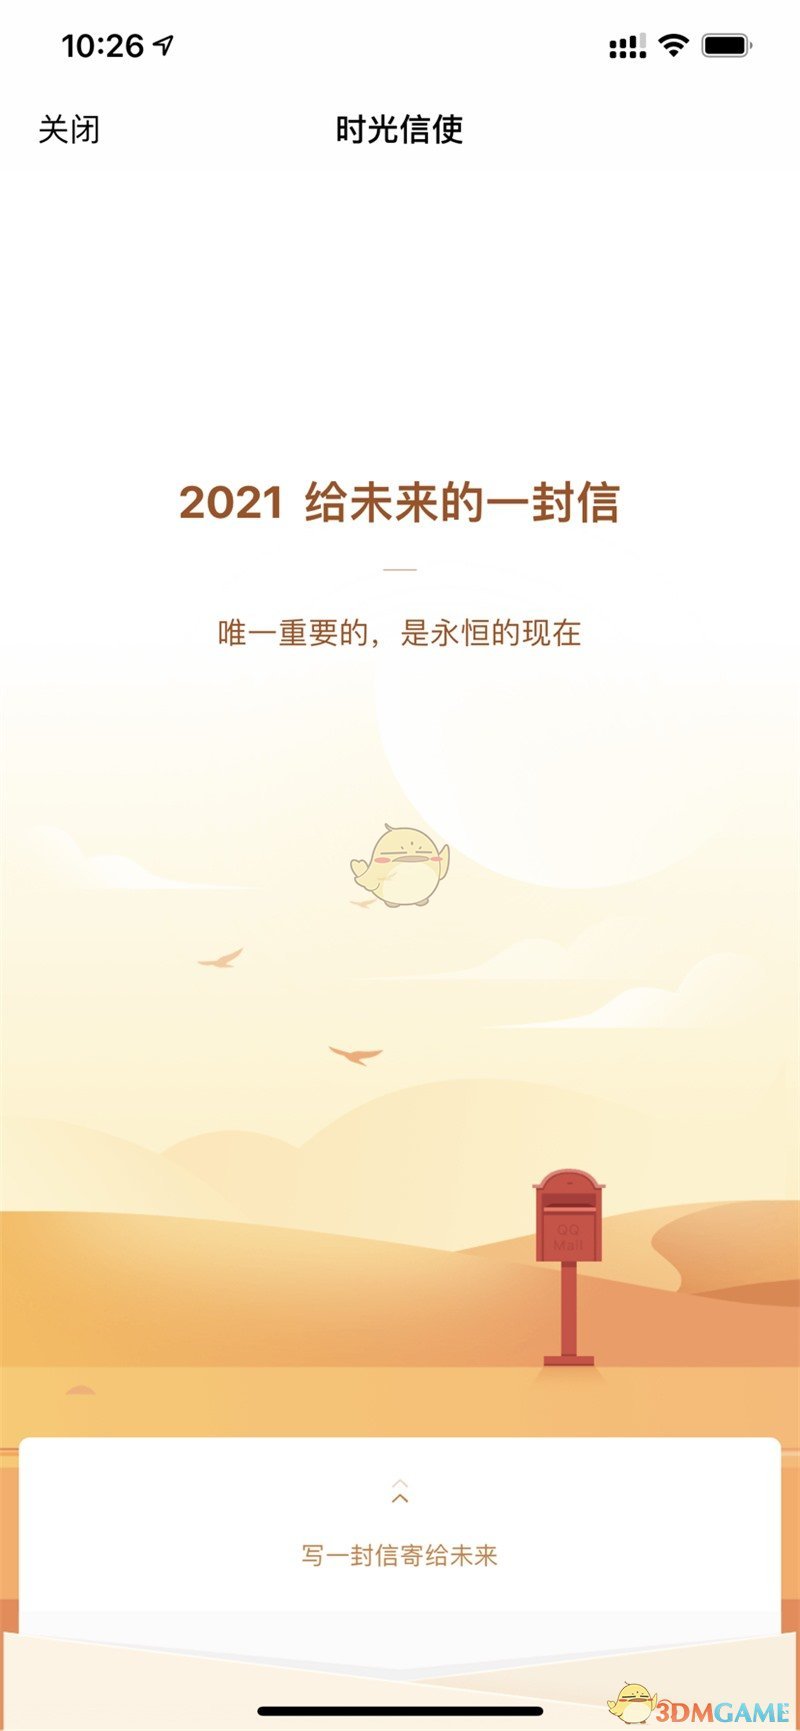 《QQ邮箱》时光信使2021给未来的一封信活动玩法